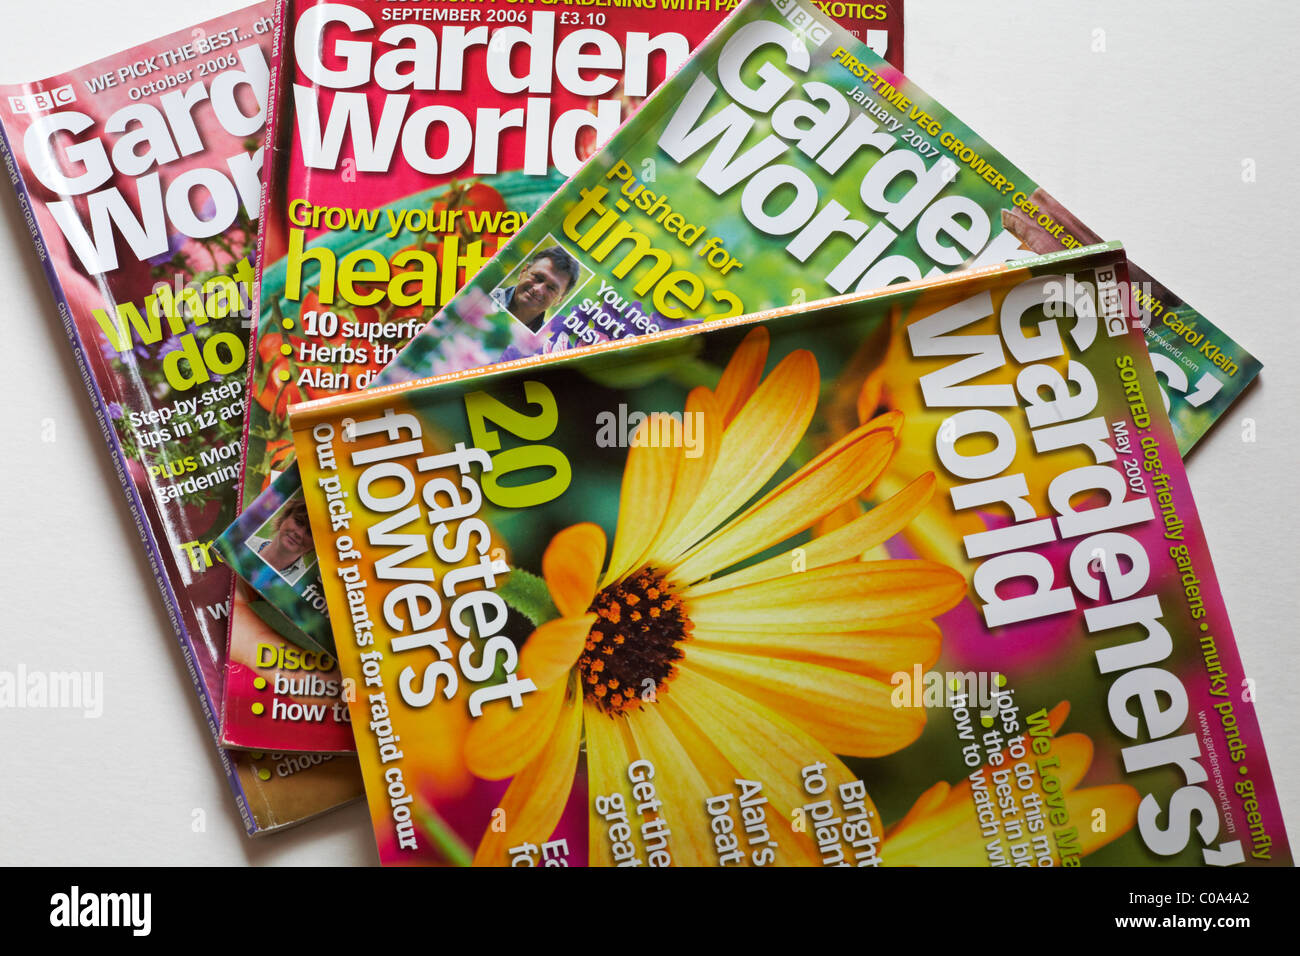 Selezione di riviste Gardeners World da 2006-2007 su sfondo bianco Foto Stock